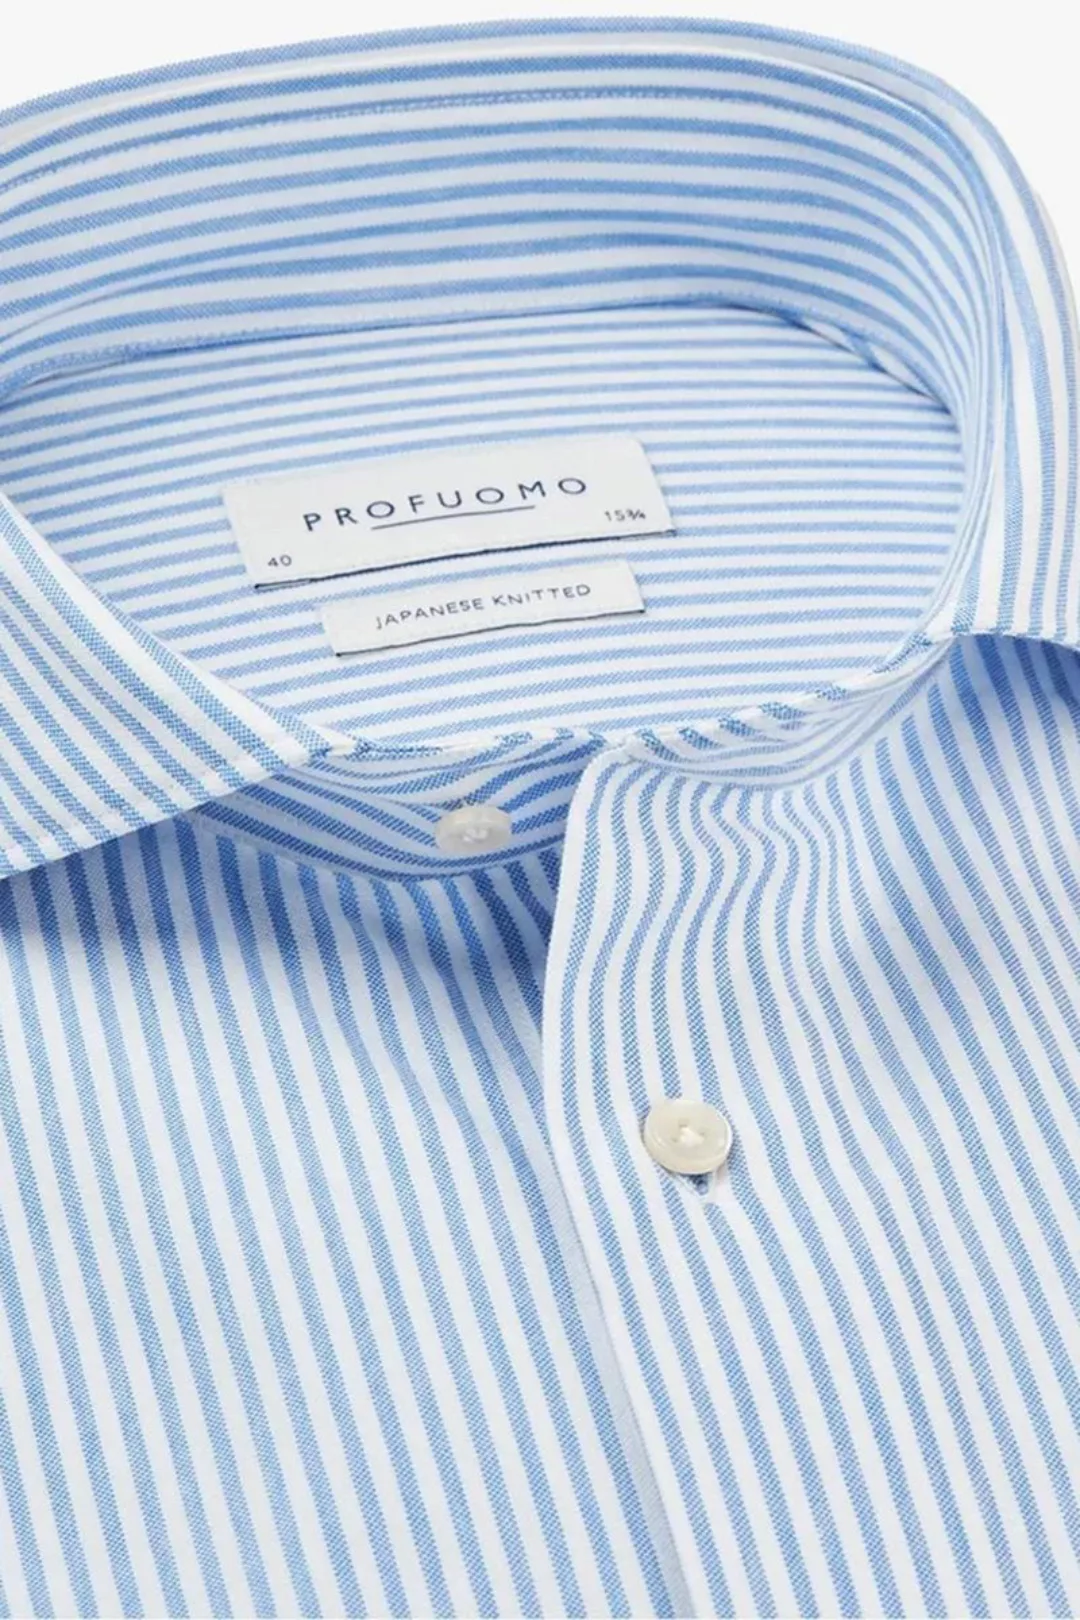 Profuomo Hemd Japanese Knitted Blau Streifen - Größe 41 günstig online kaufen